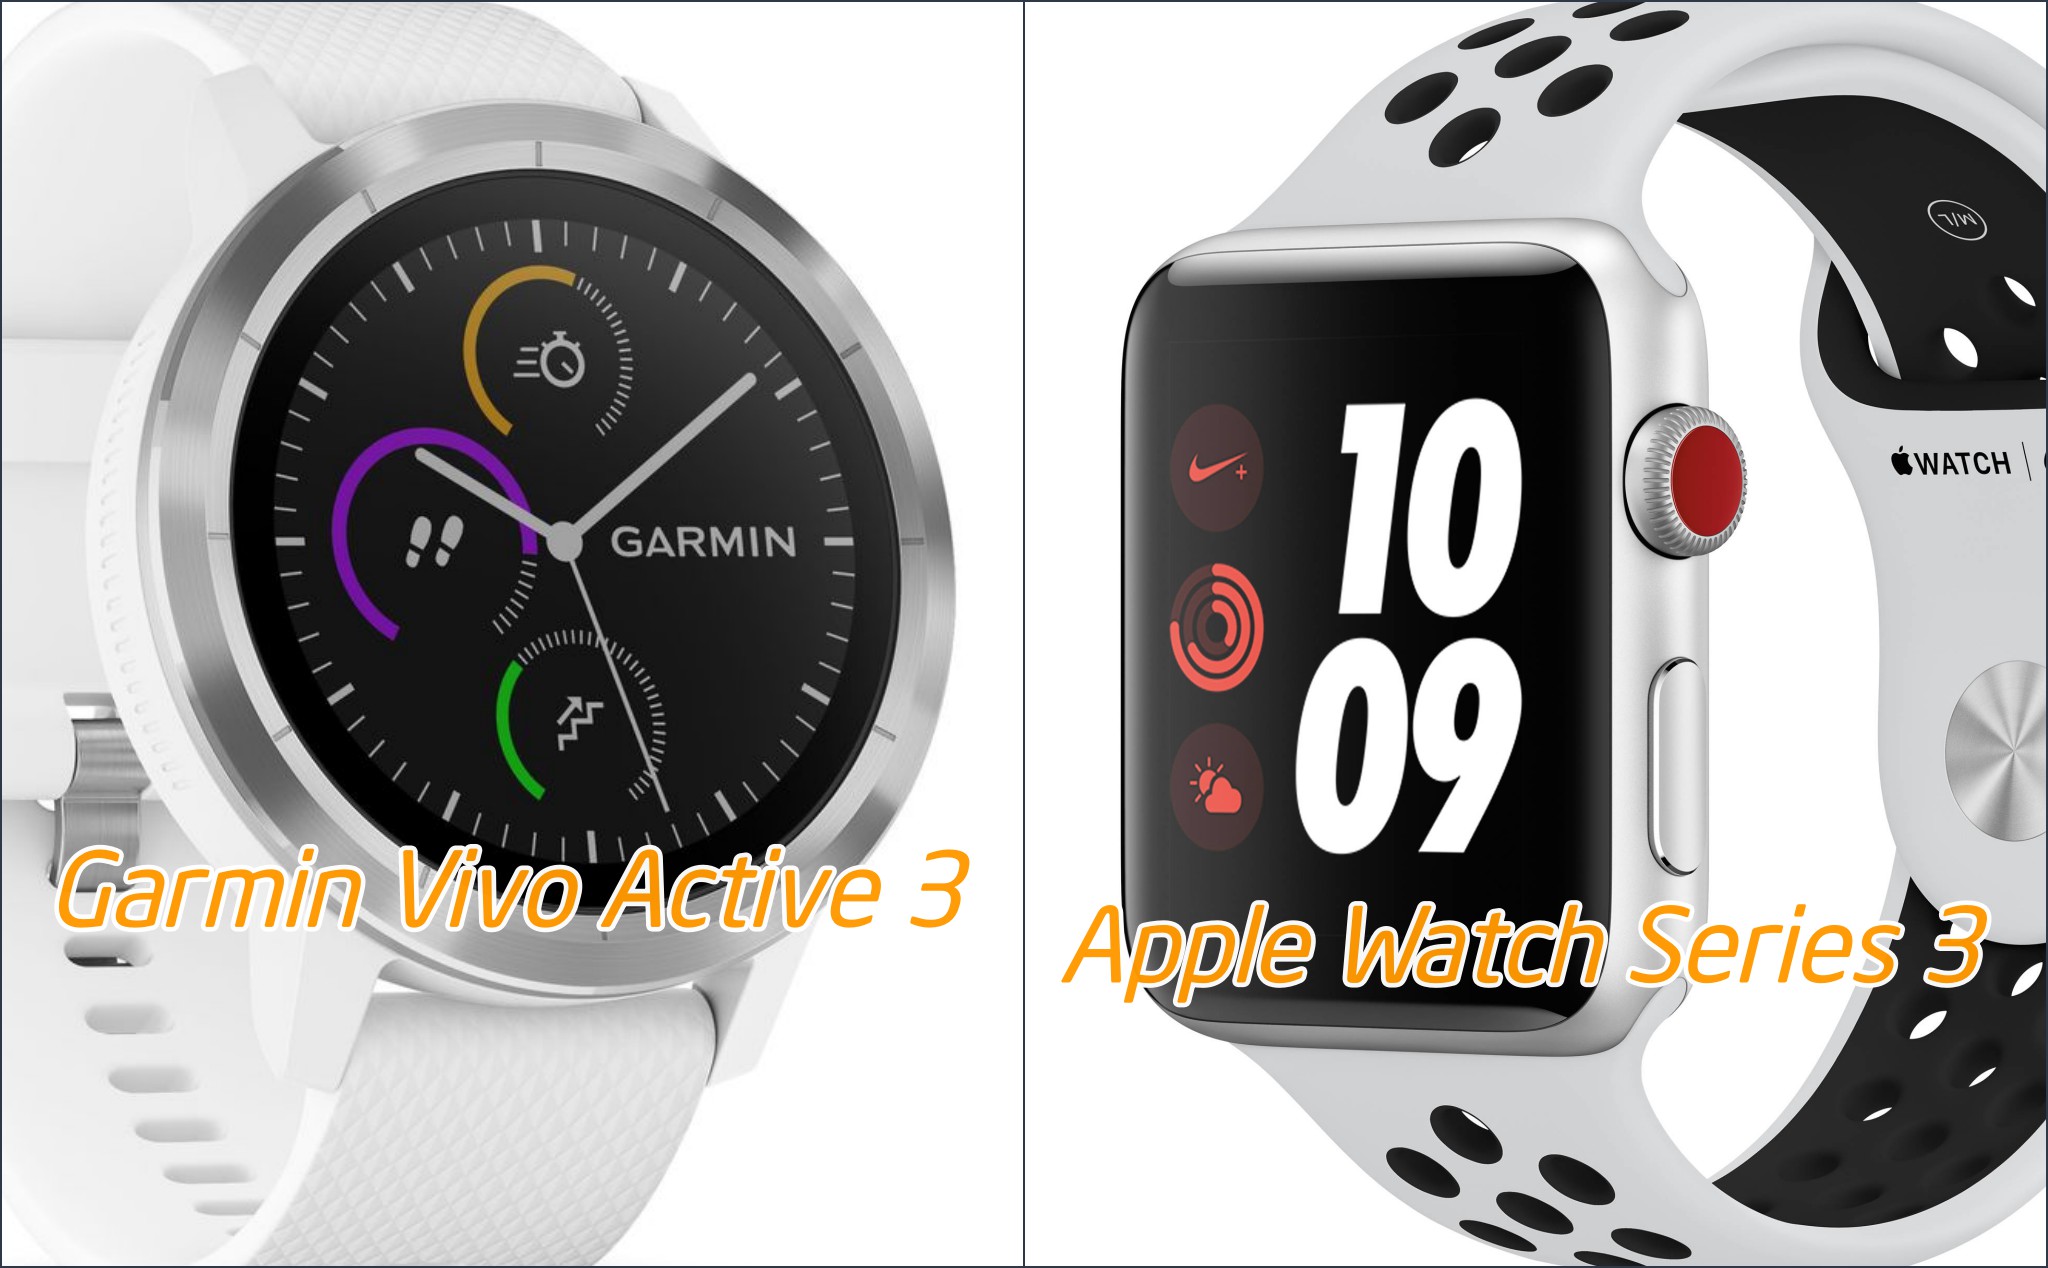 Xin tư vấn Garmin vivoactive 3 và apple watch series 3